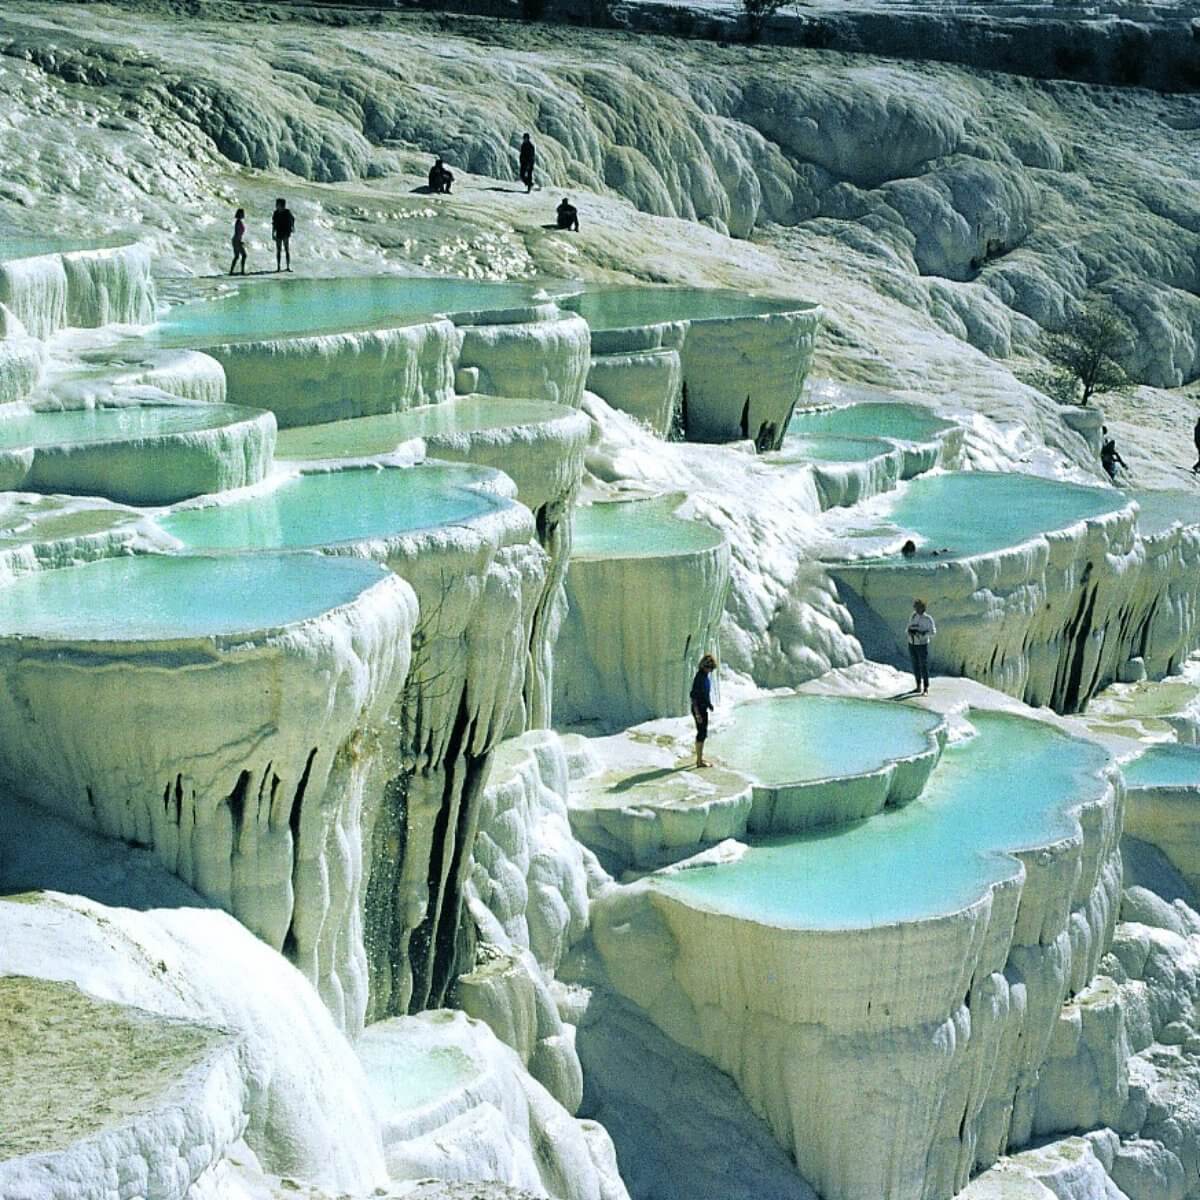 The calcium pools of Pamukkale